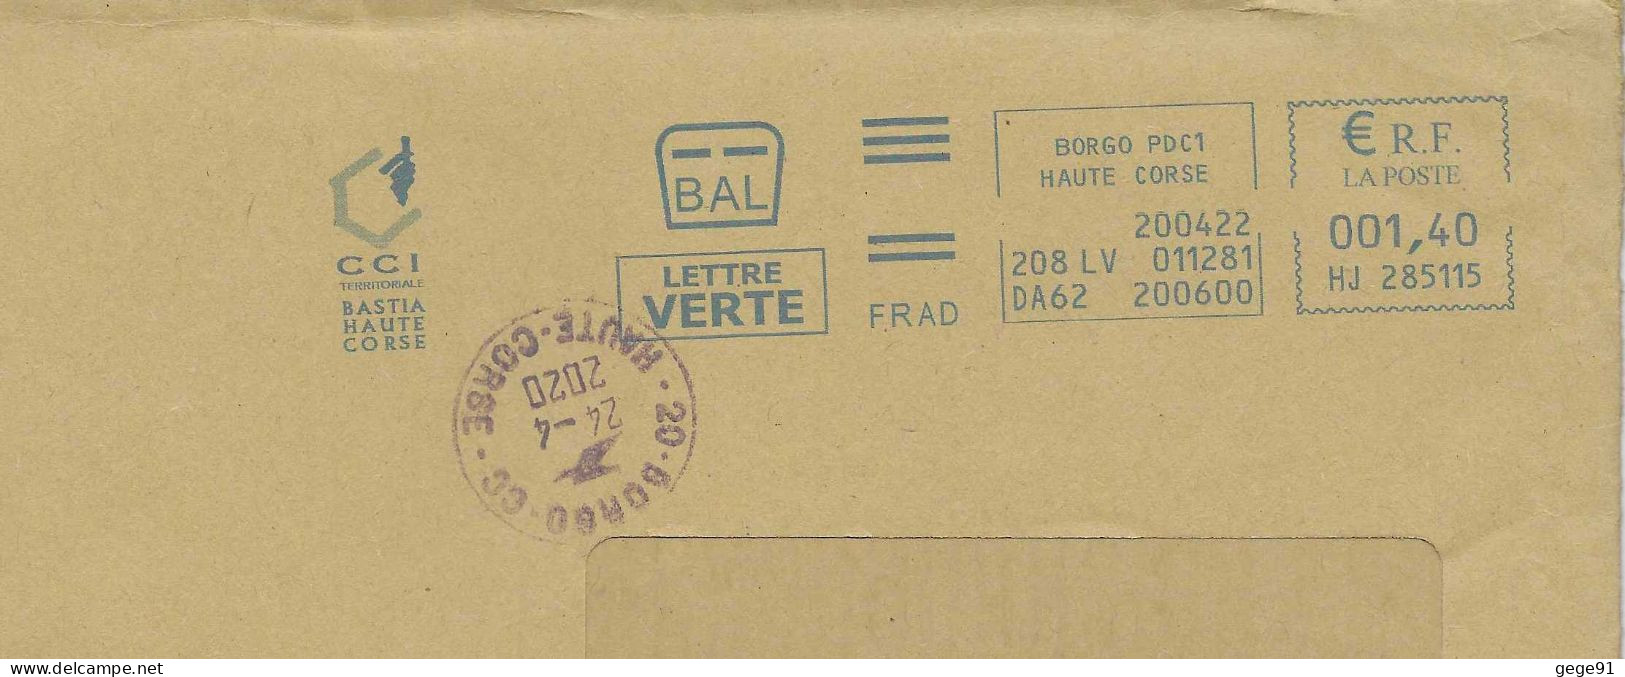 Ema Neopost HJ - Carte De La Corse - Cachet Manuel De Borgo Pour Correction De Date - Enveloppe Réduite 220x110 - Géographie